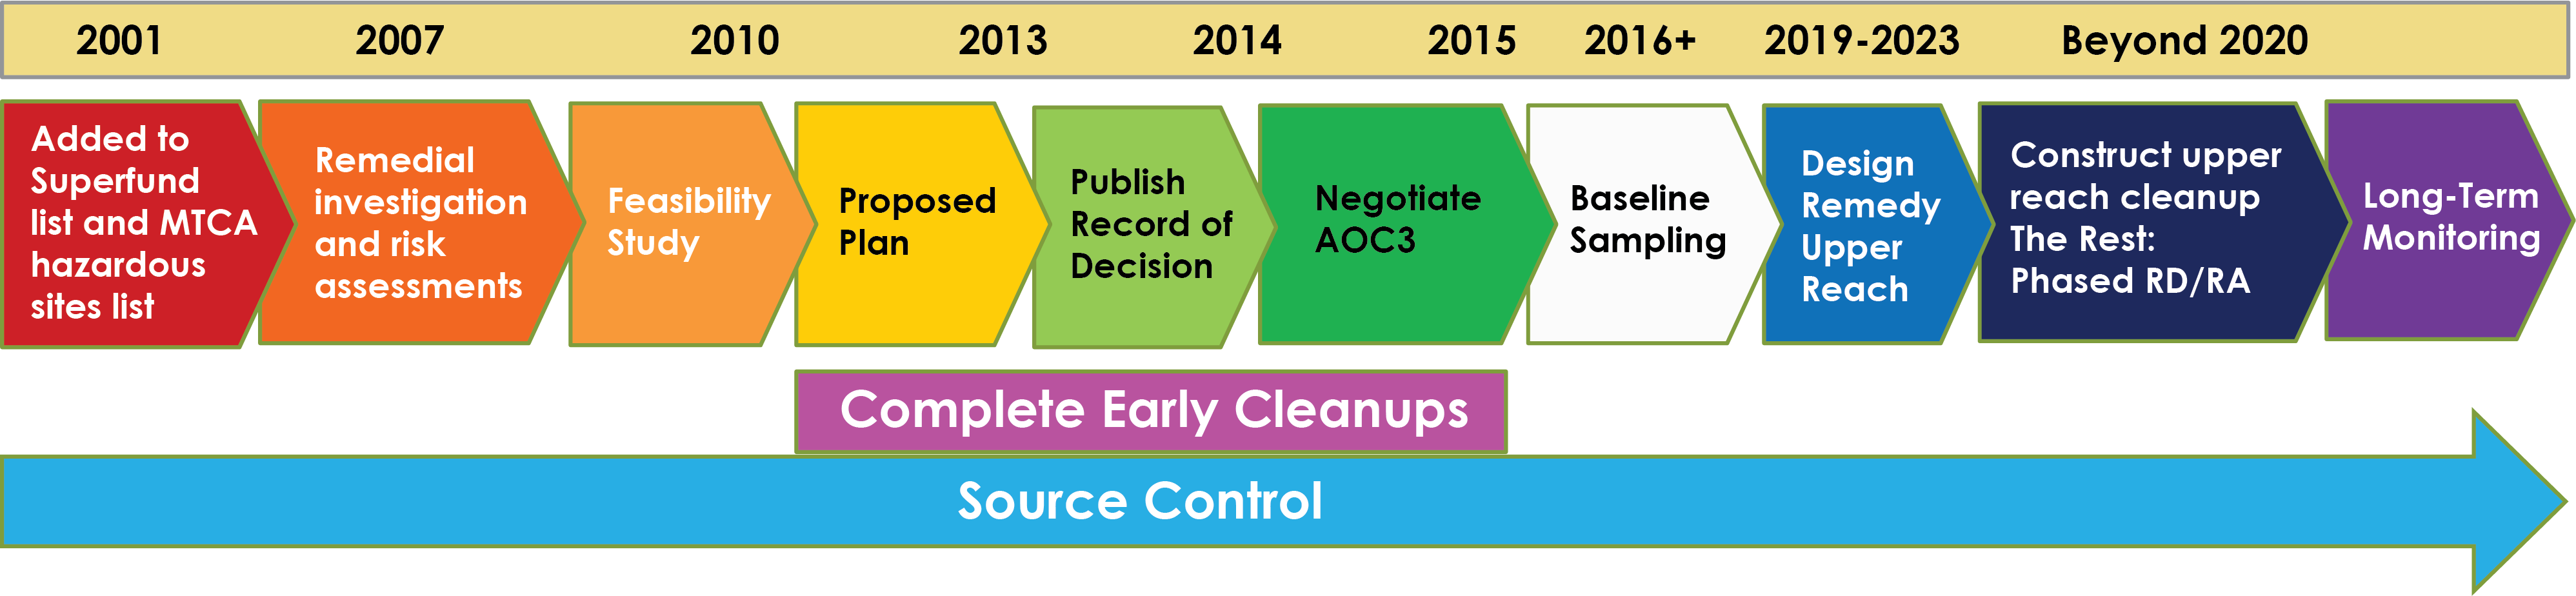 EPA Duwamish River cleanup timeline